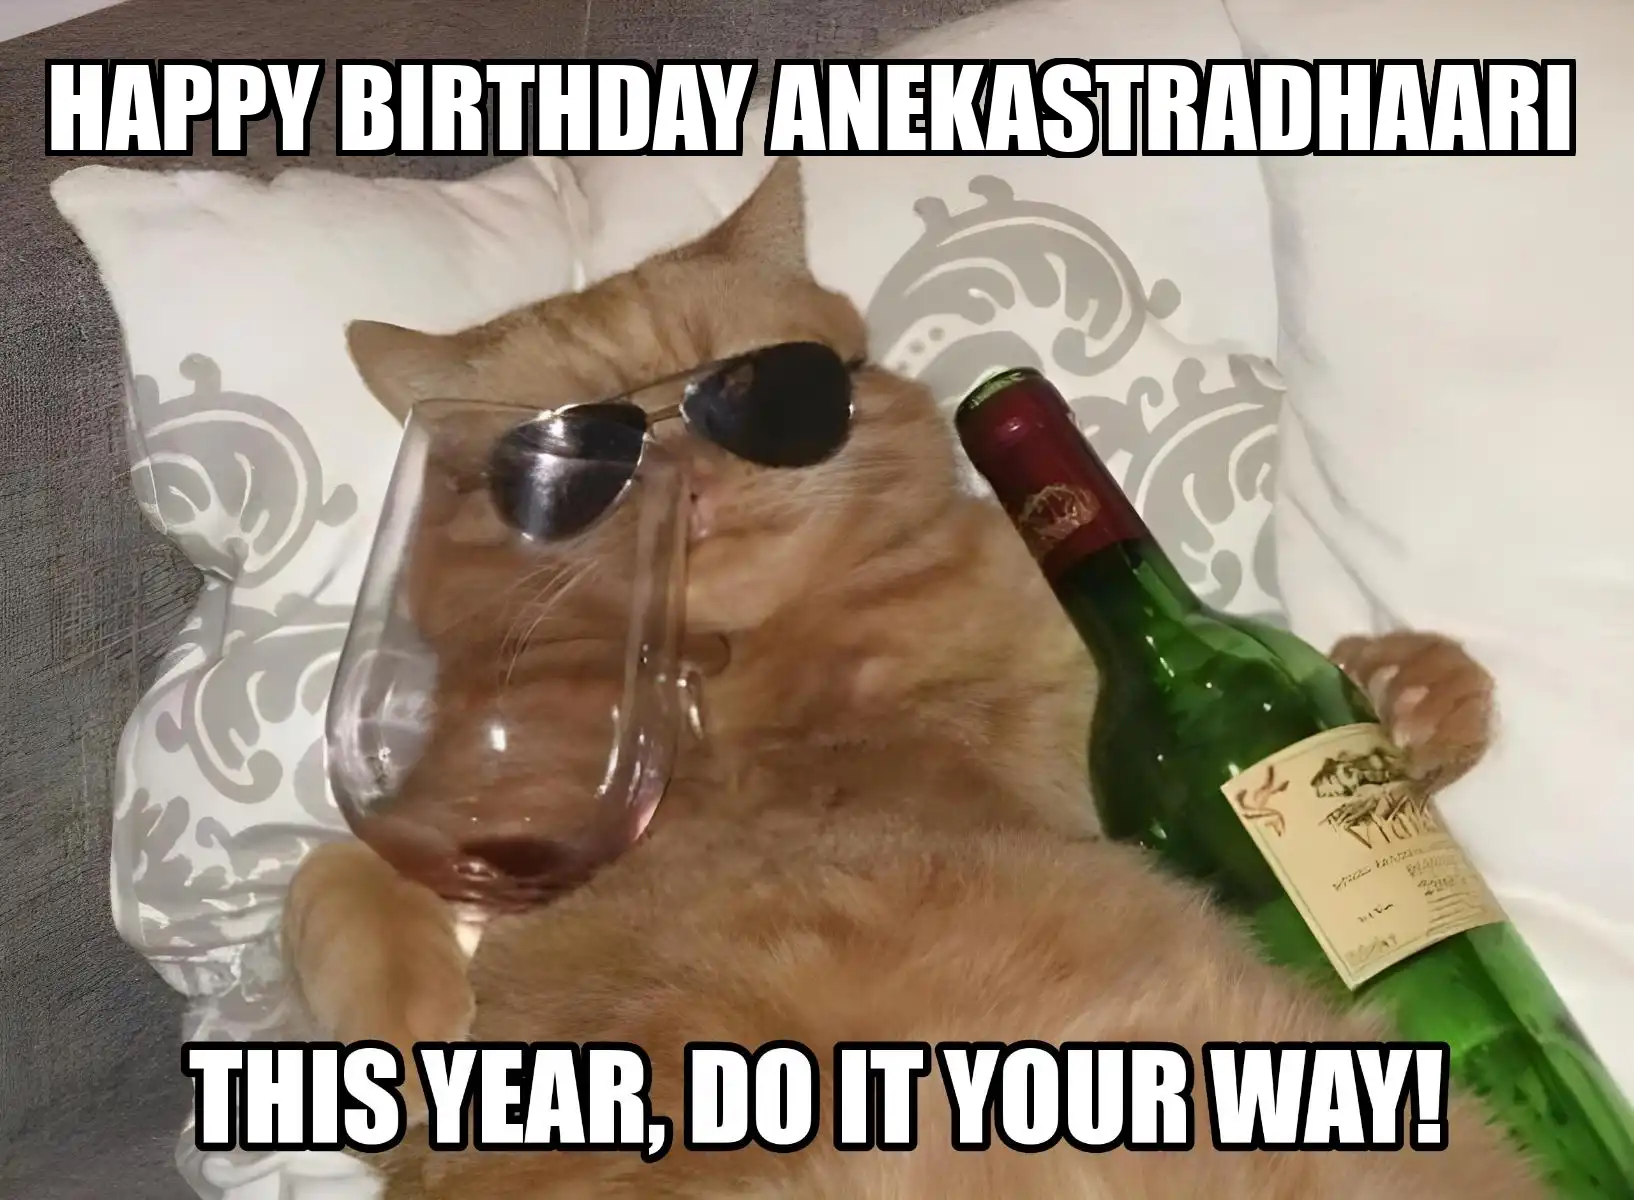 Happy Birthday Anekastradhaari This Year Do It Your Way Meme